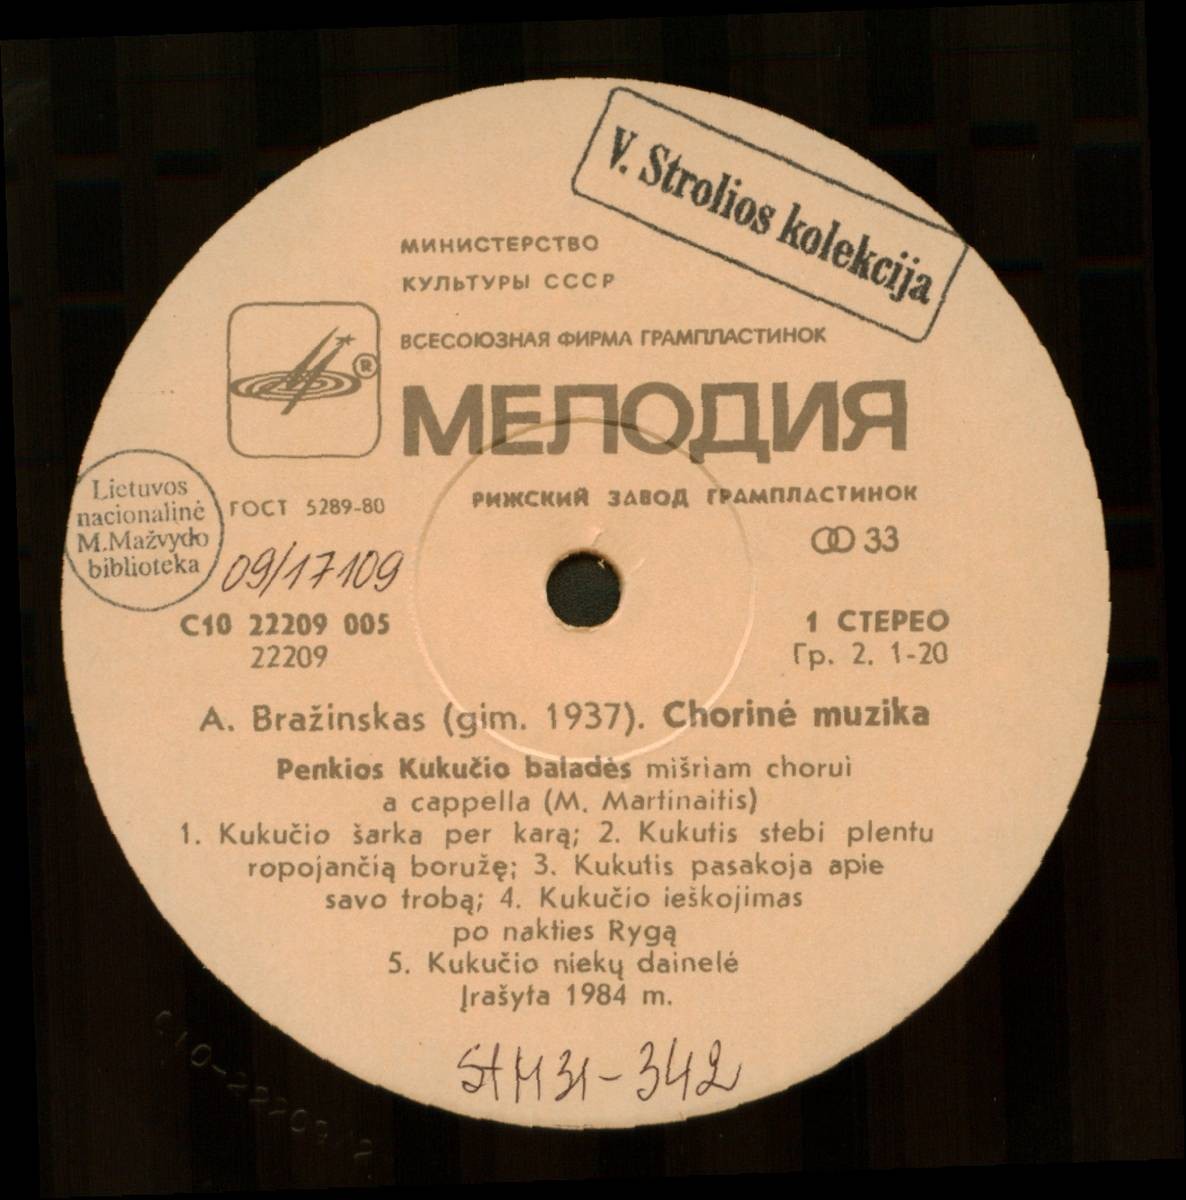 Альгимантас БРАЖИНСКАС (1937). Хоровая музыка (на литовском языке)